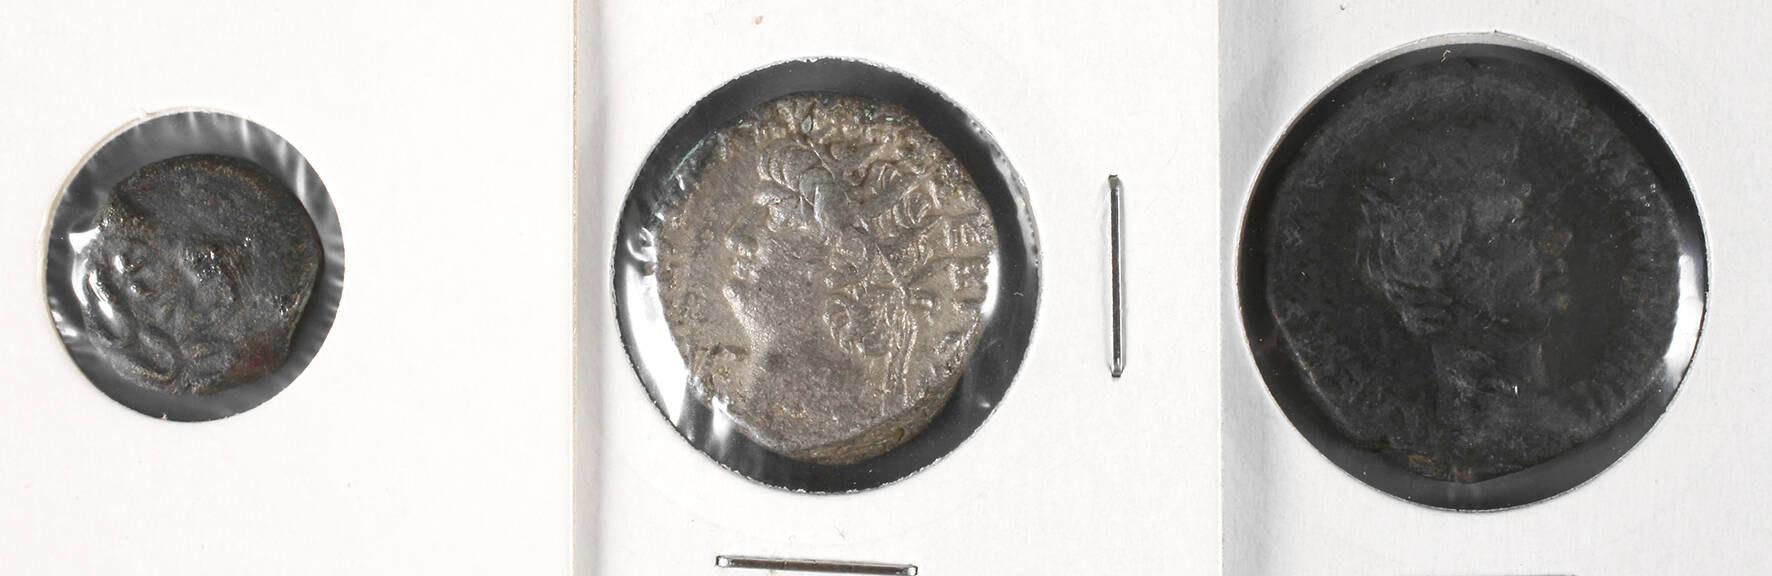 Drei Münzen der frühen römischen Kaiserzeit